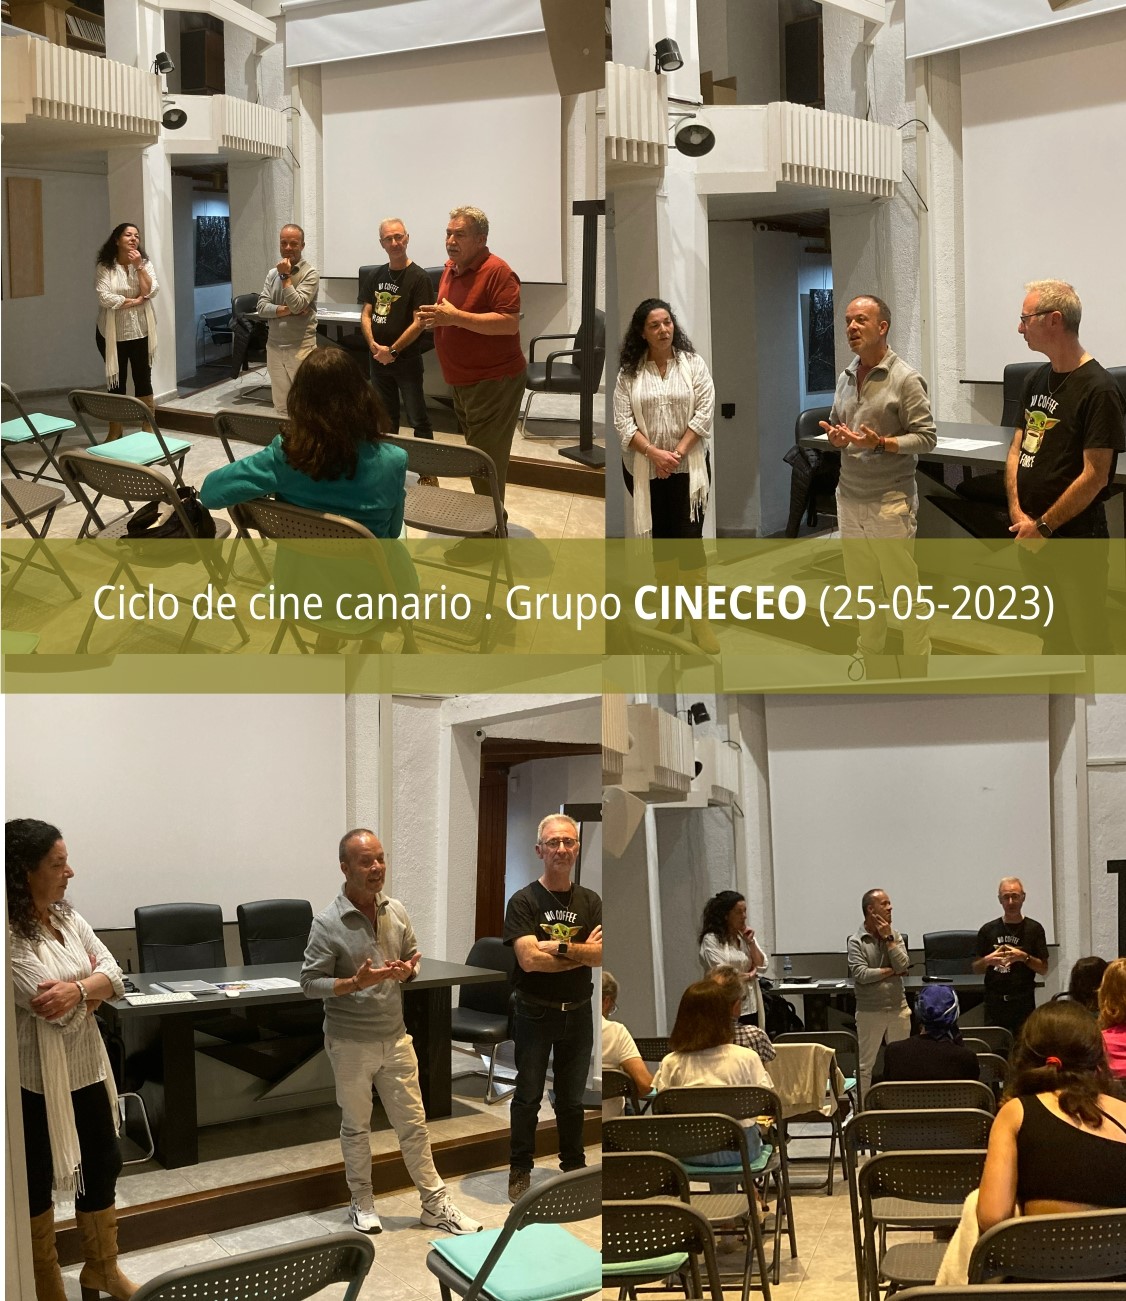 Ciclo Ciclo de cine canario, sesión dedicada al grupo Cineceo, de La Orotava (25/05/2023)